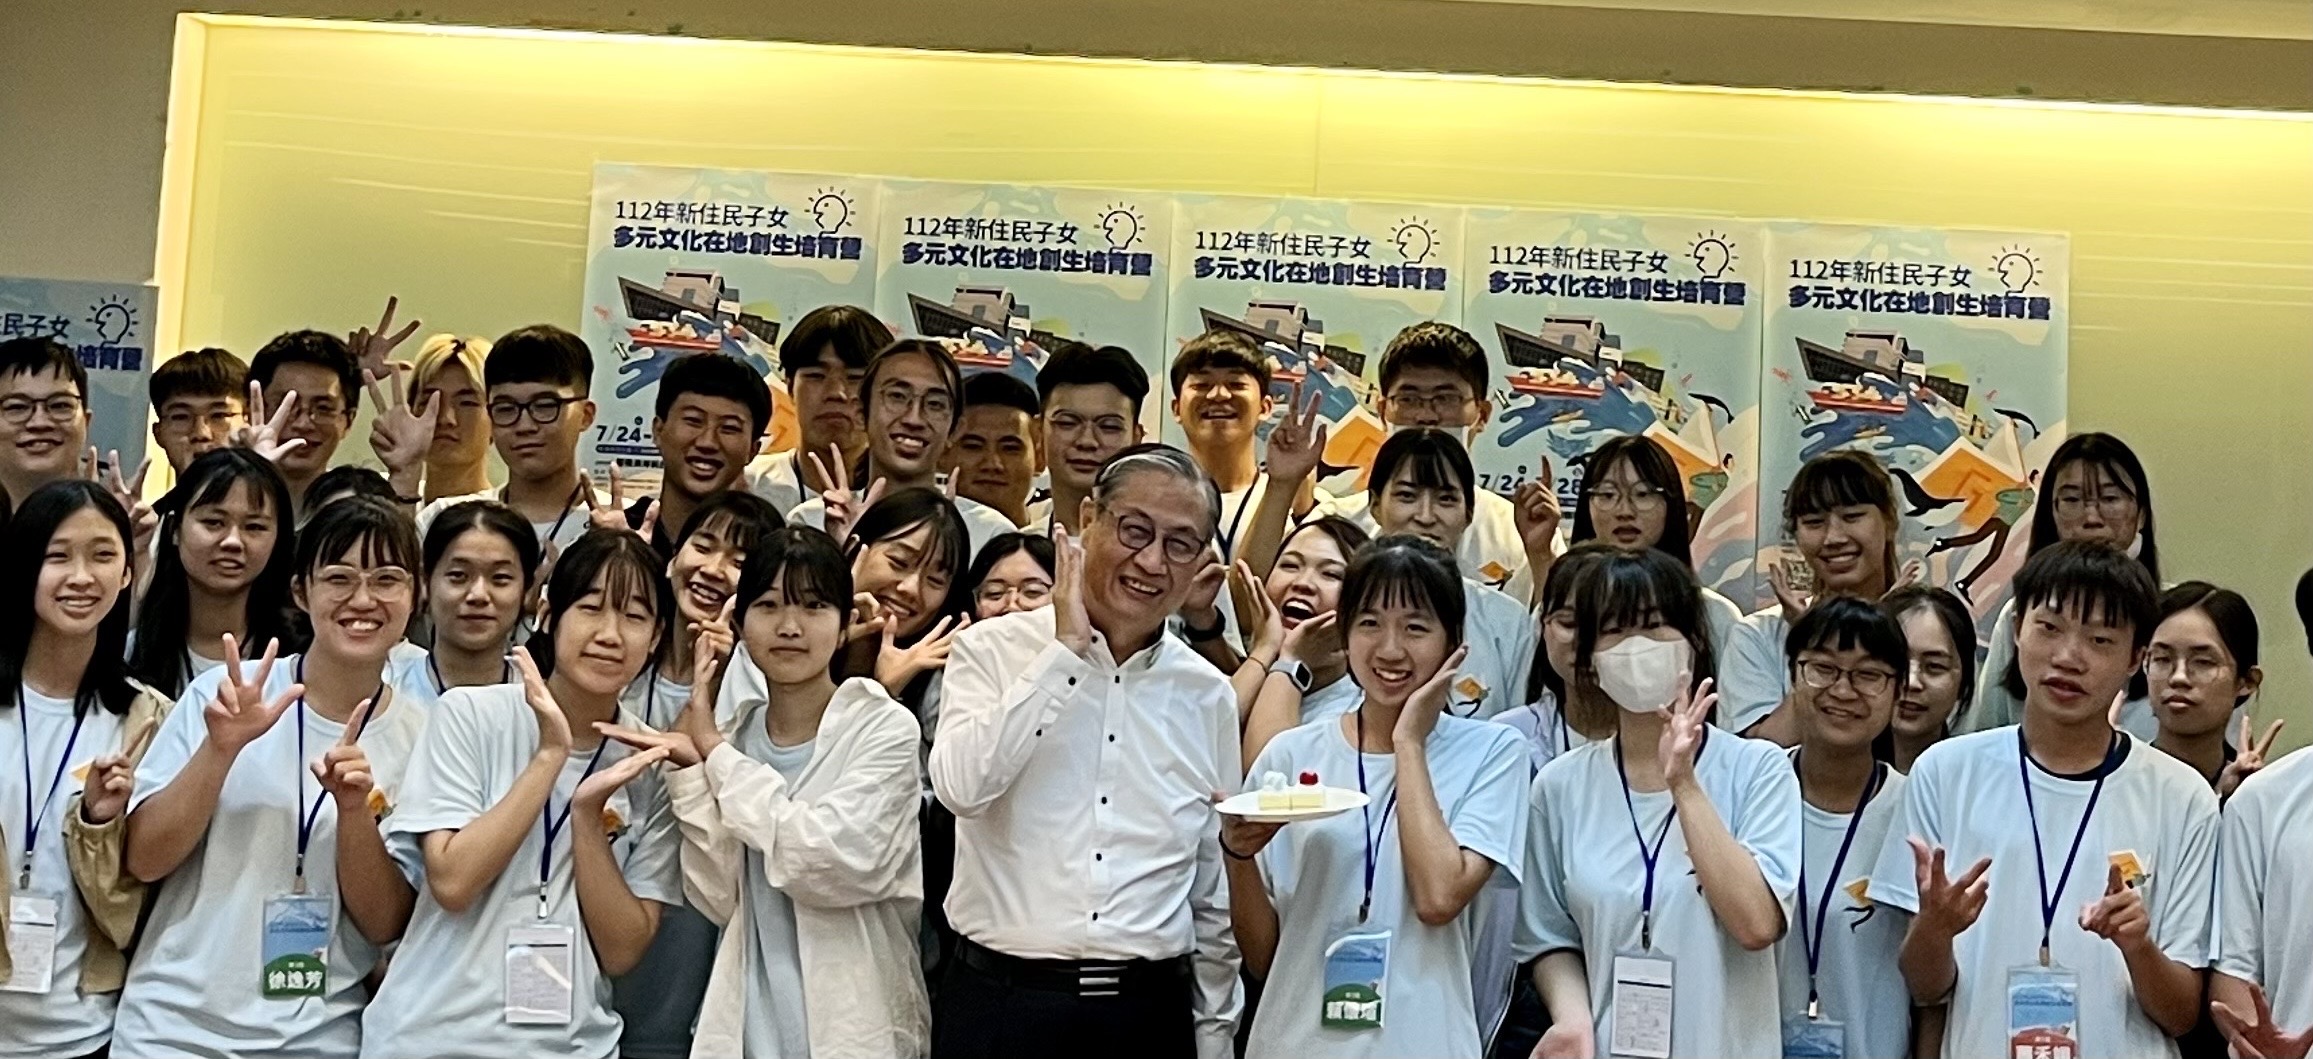 Direktur Zhong Jingkun dari Departemen Imigrasi (tengah) bergabung pada acara multikultural dengan anak-anak imigran baru.  (Sumber foto : Departemen Imigrasi)